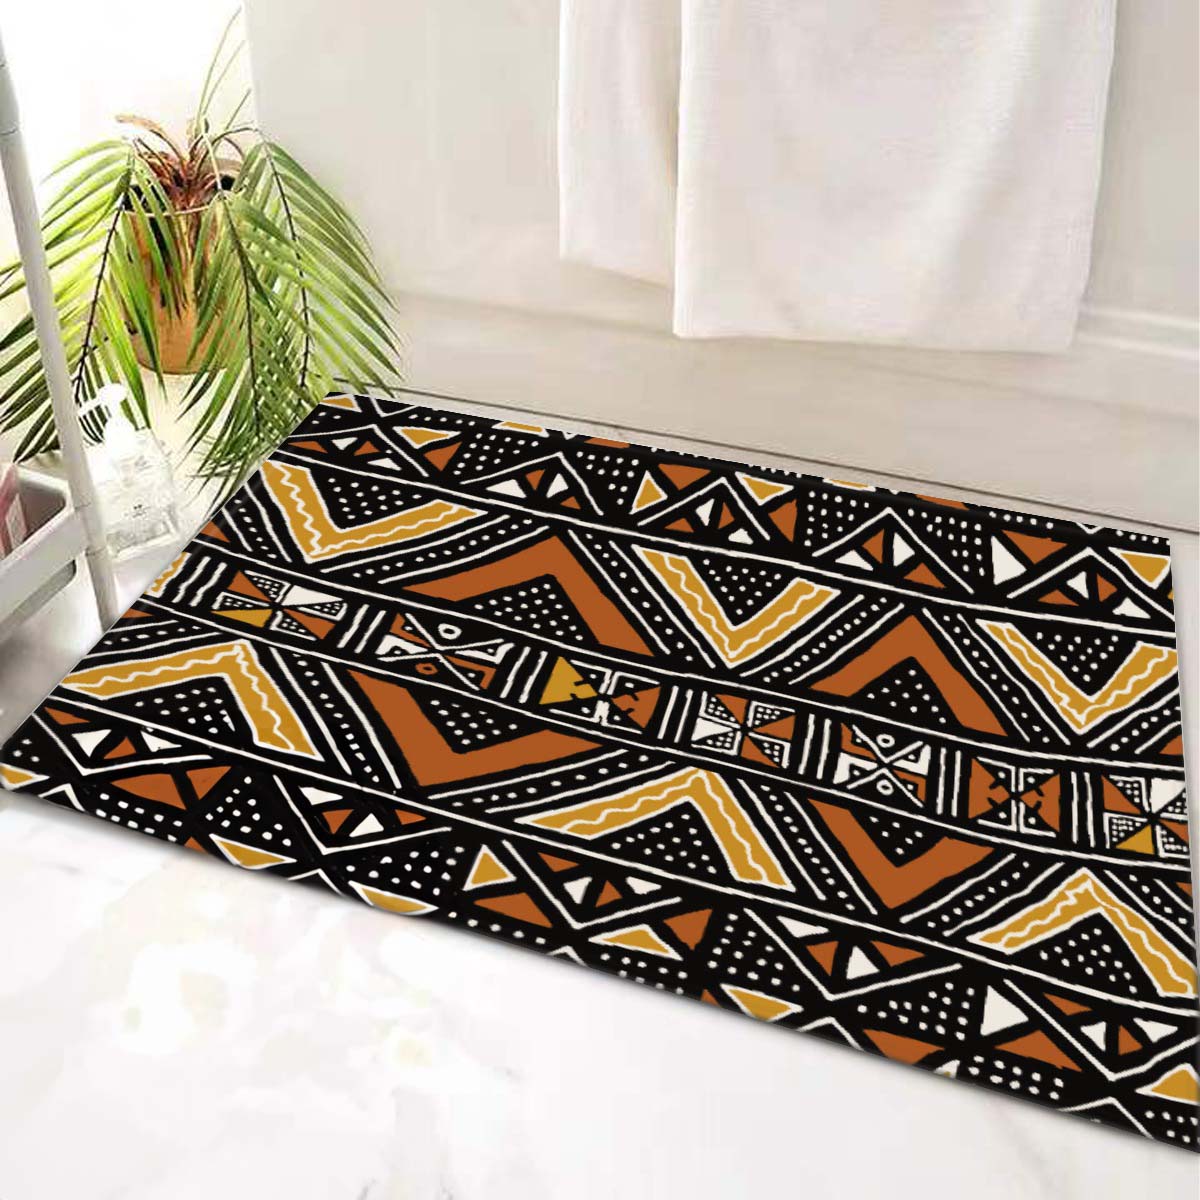 African Unique Bath Mats Mudcloth Print Bathroom Rug